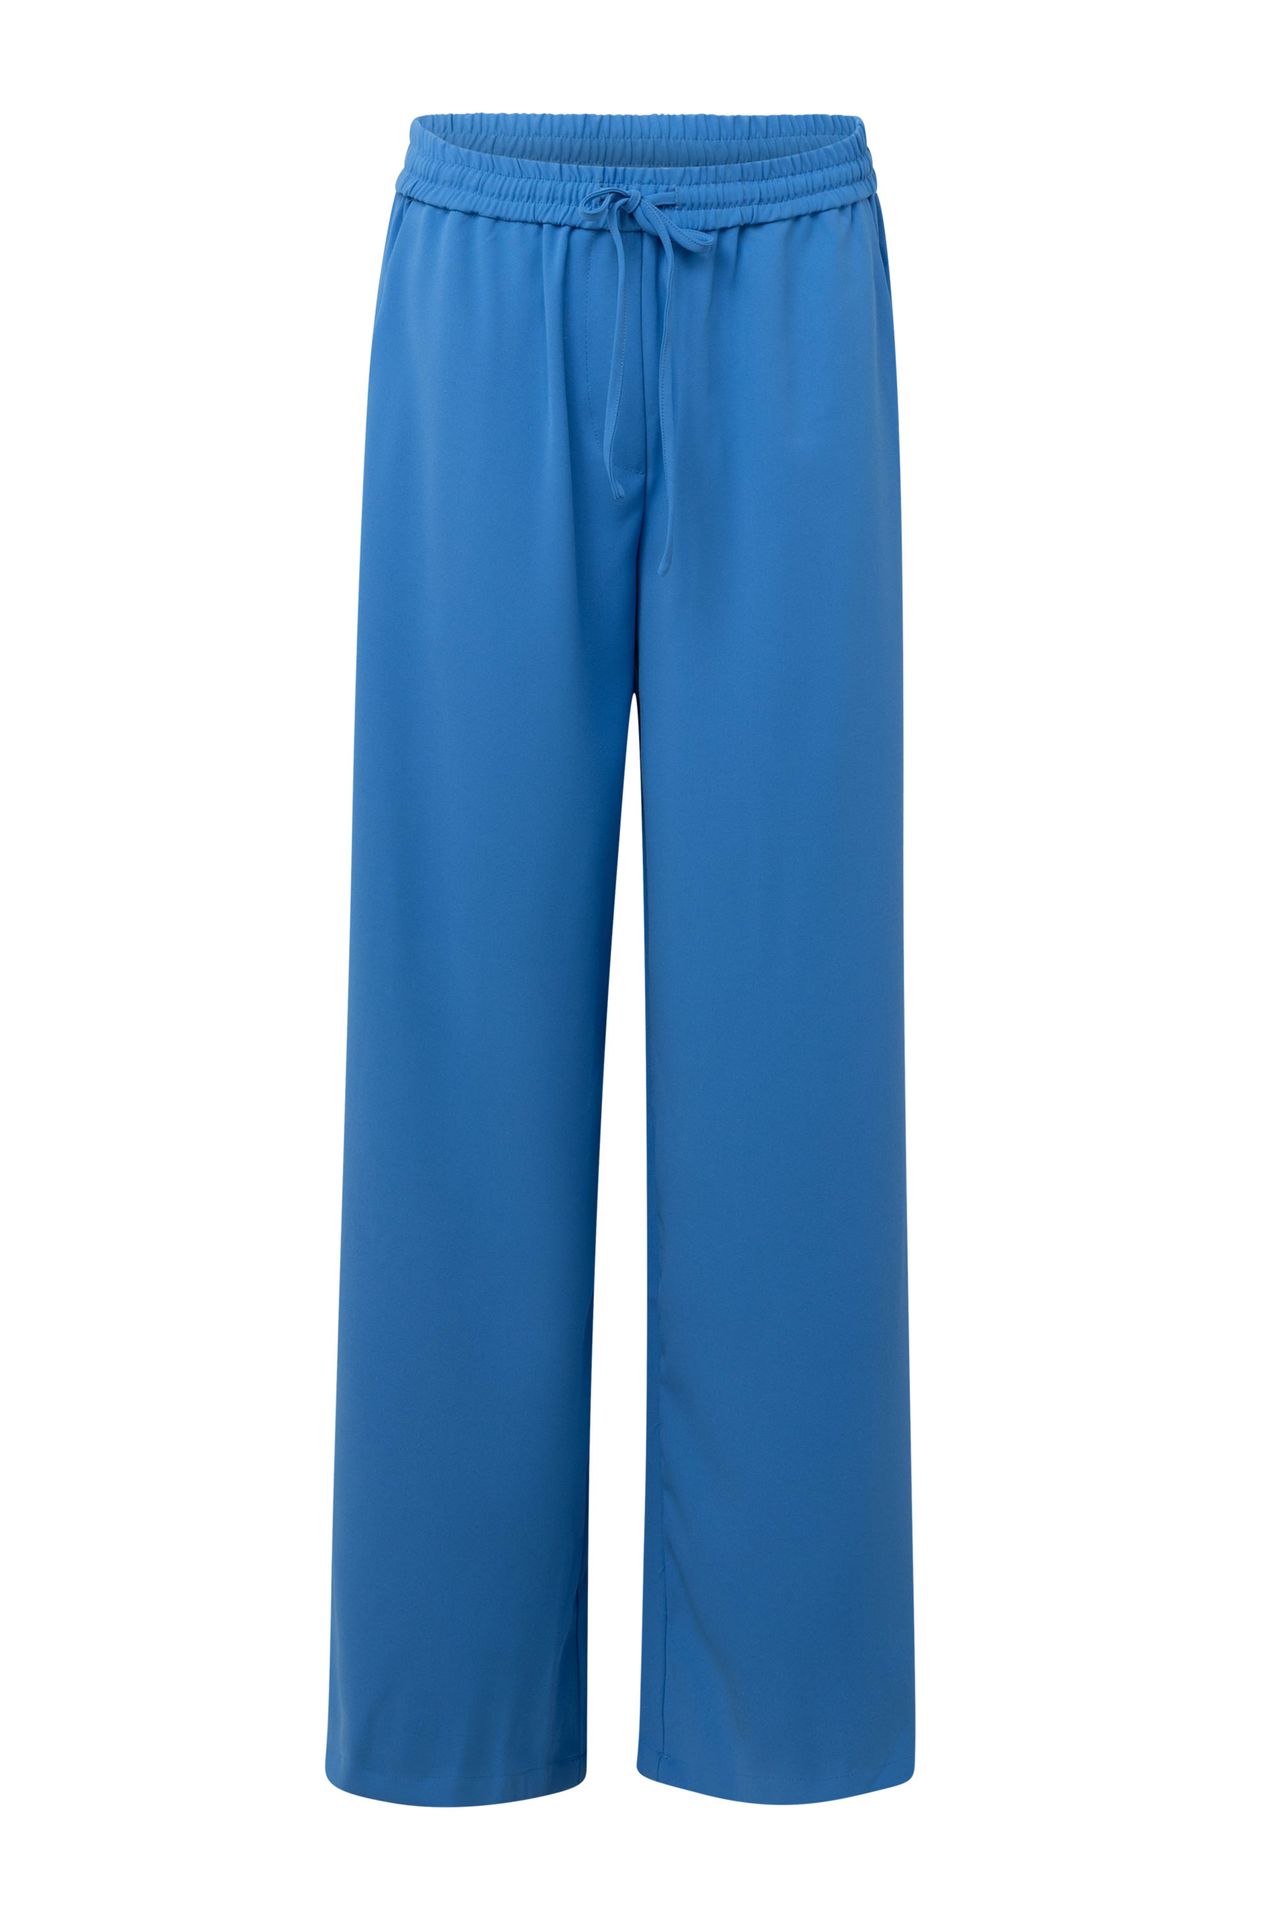 Norah Blauwe pantalon cobalt 214667-468